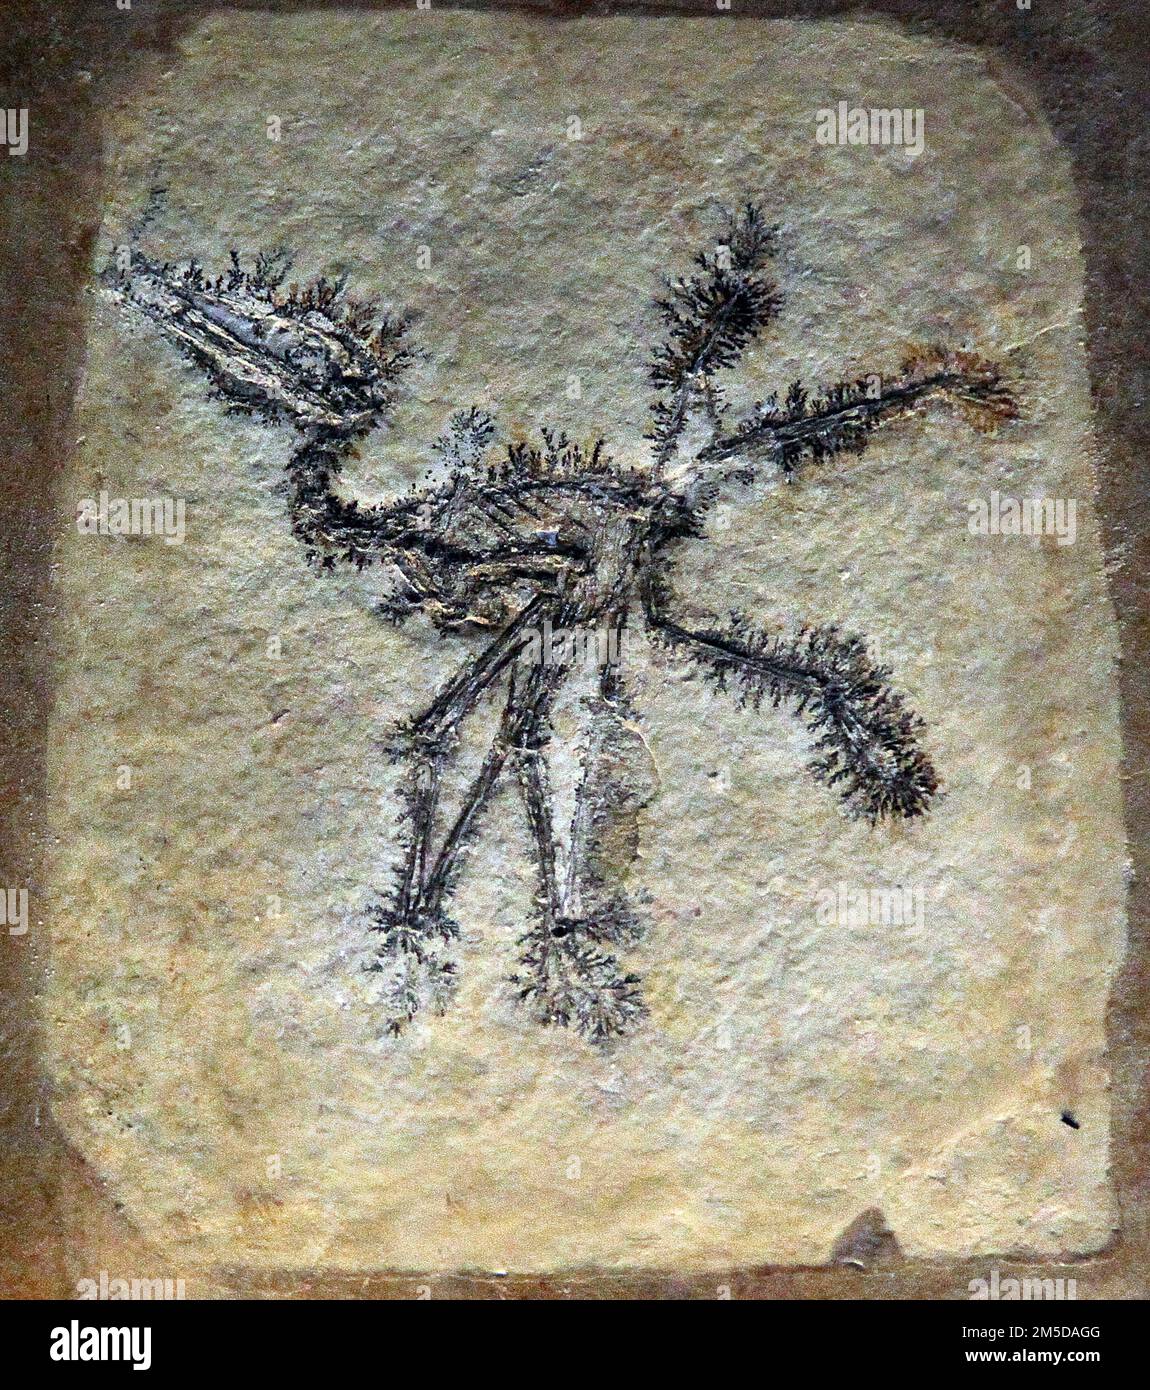 Pterodactylus antiquus.Pterodactylus Fossil.ausgestorbene Gattung von Pterosauriern.nur eine einzige Art.der erste Pterosaurier identifizierte ''fliegende Reptilien''.Solnhofener Kalkstein Bayern Deutschland.Spätjura vor 150,8 bis 148,5 Millionen Jahren.dünne Membran oder Patagium wurde zwischen seinen langen Fingerknochen gestreckt. Stockfoto